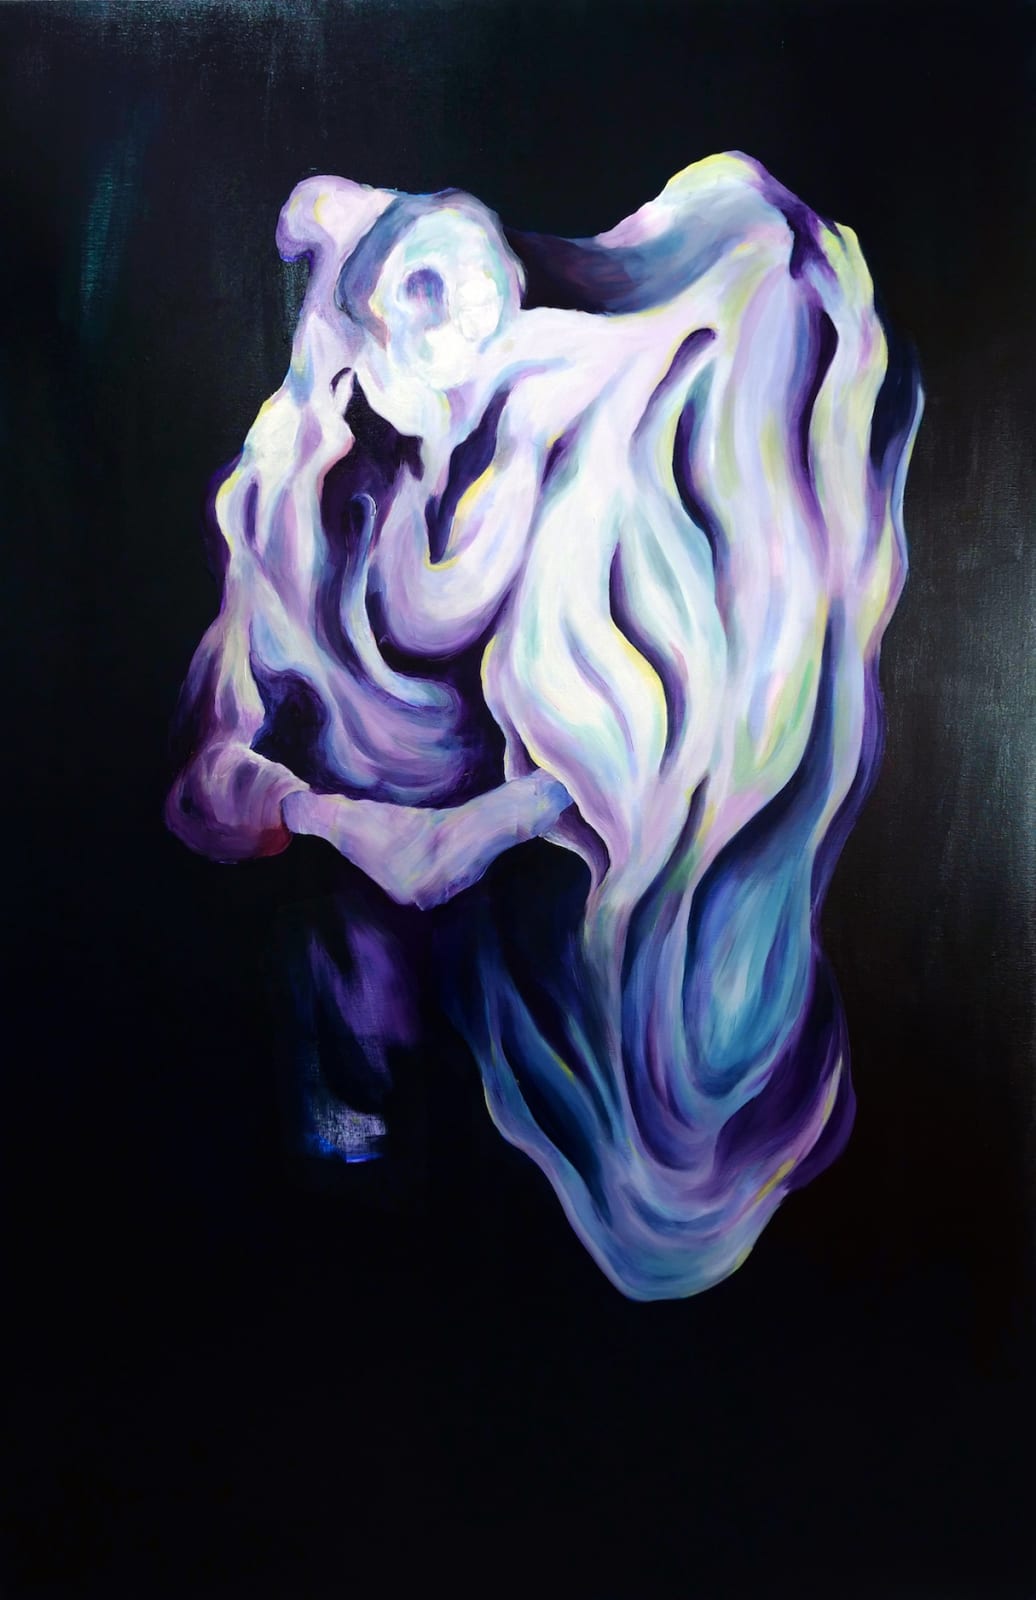 Nicolas Aguirre, Perpétuelle soul mutation I, 2022, acrylic on canvas, 195 x 130 cm